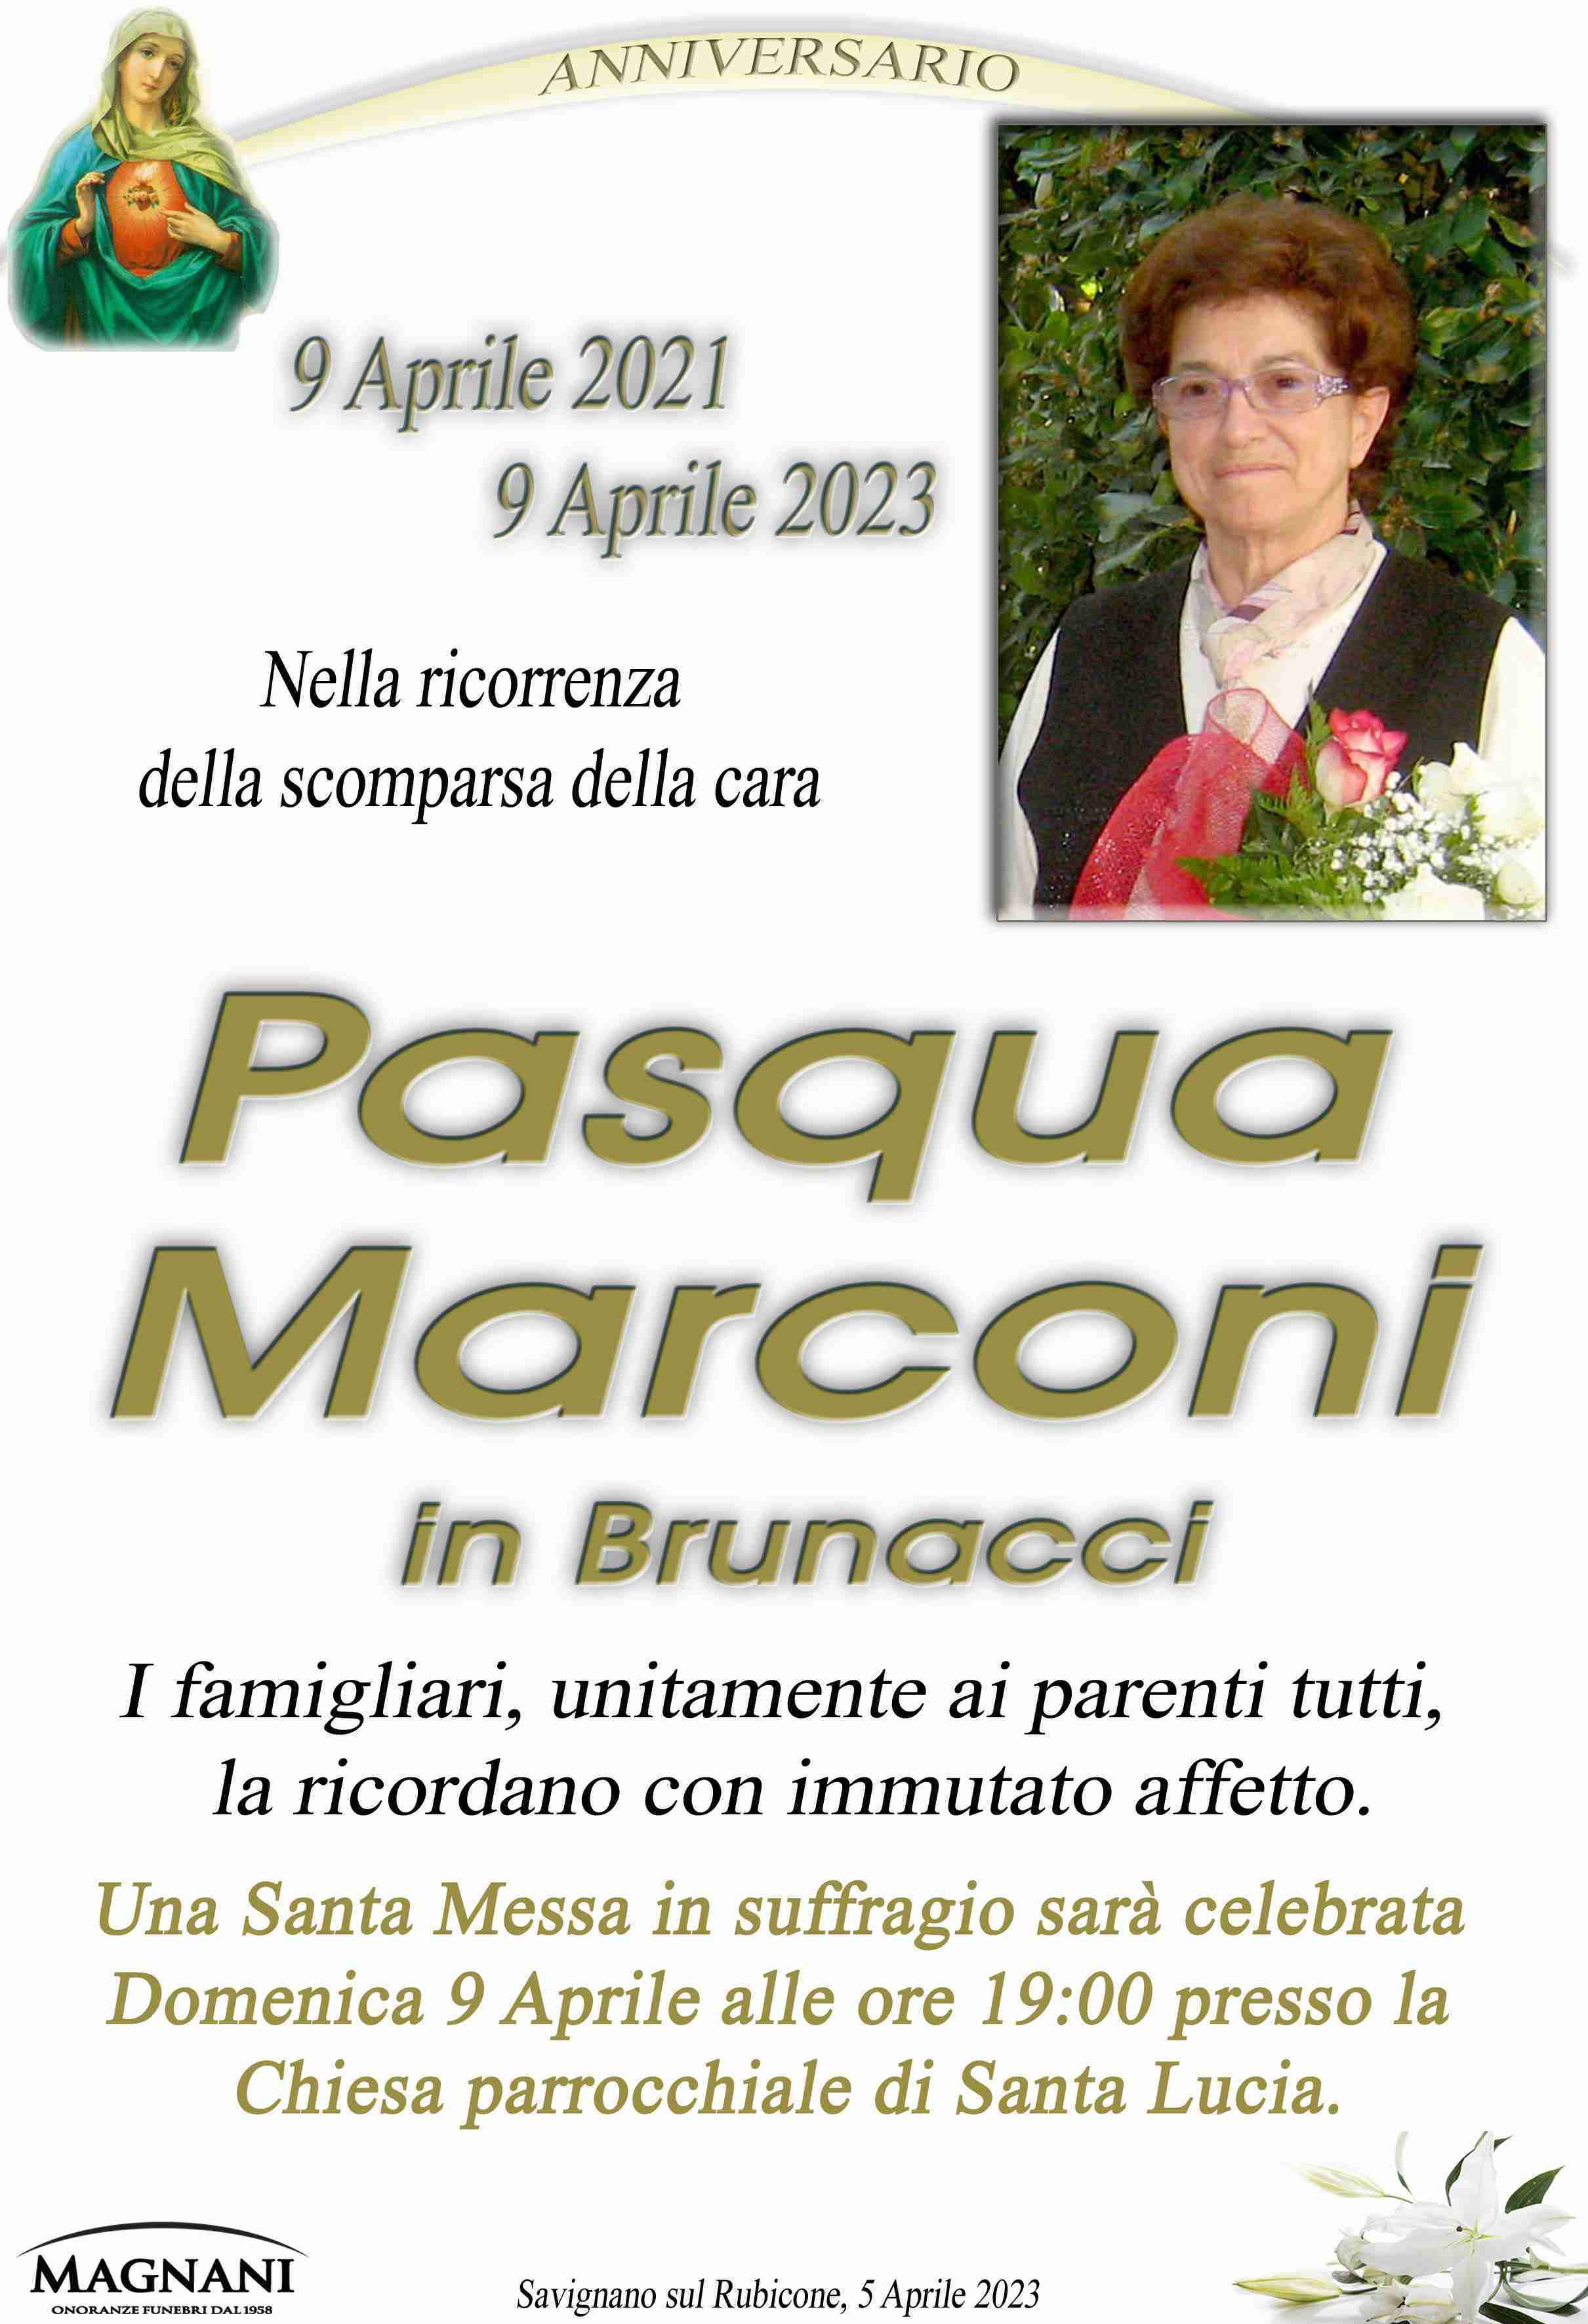 Pasqua Marconi